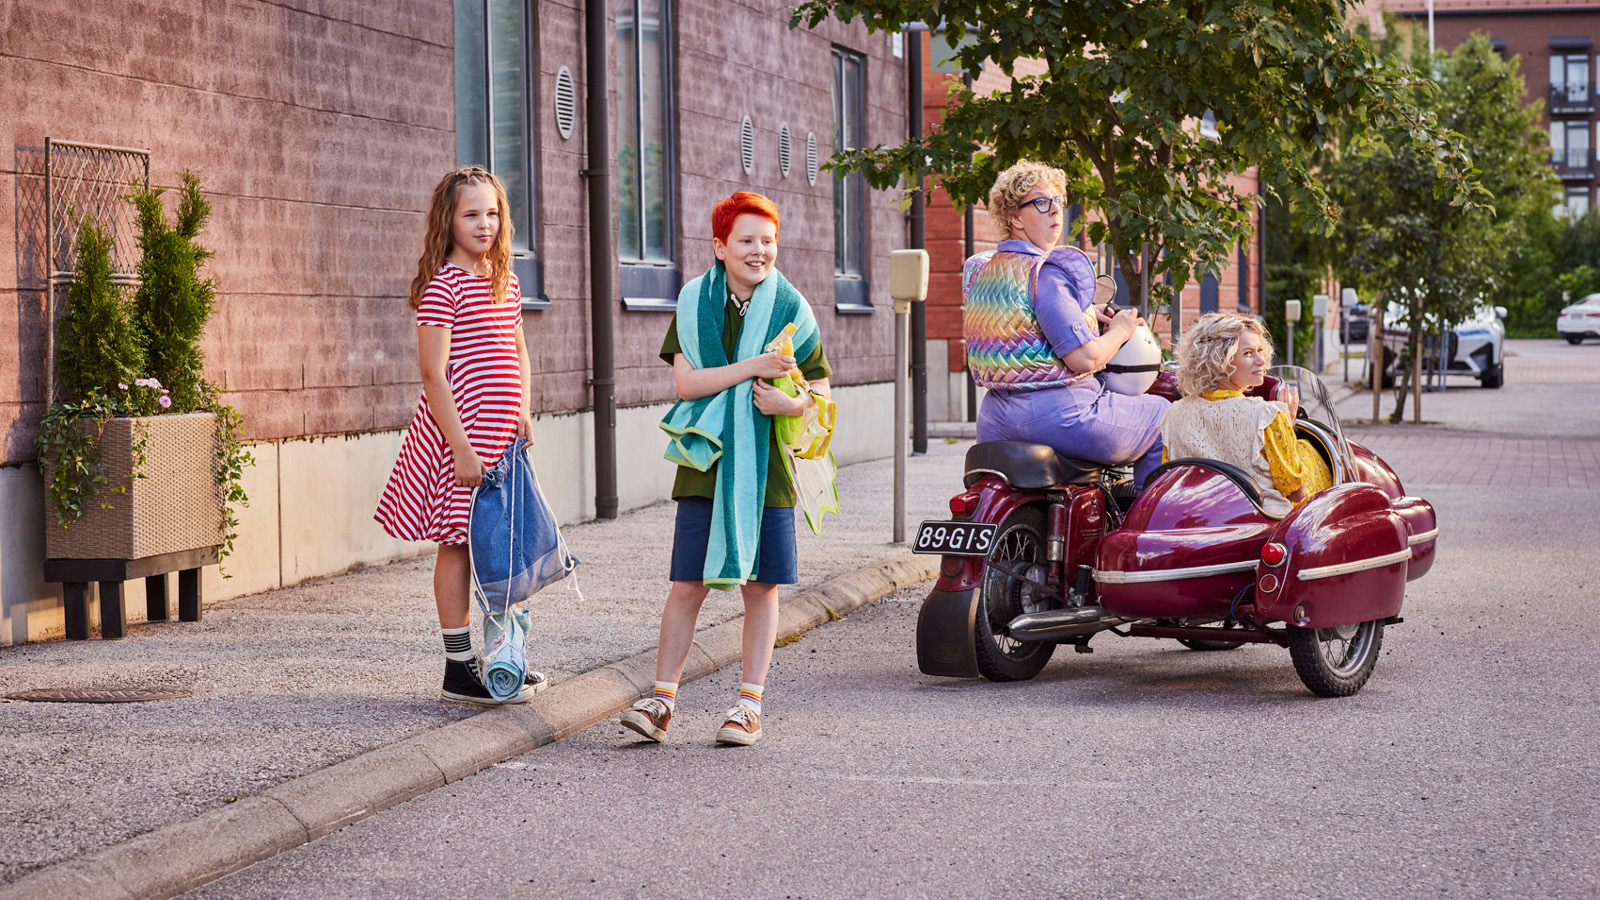 Kuvassa ovat vasemmalla seisomassa kadulla Nelli Nuudelipää sini-valkoraidallisessa mekossa ja Risto Räppääjä shortseissa ja t-paidassa.  Vieressä ovat moottoripyörän päällä Pakasta-Elvi ja punaisessa sivuvaunussa Rauha Räppääjä.